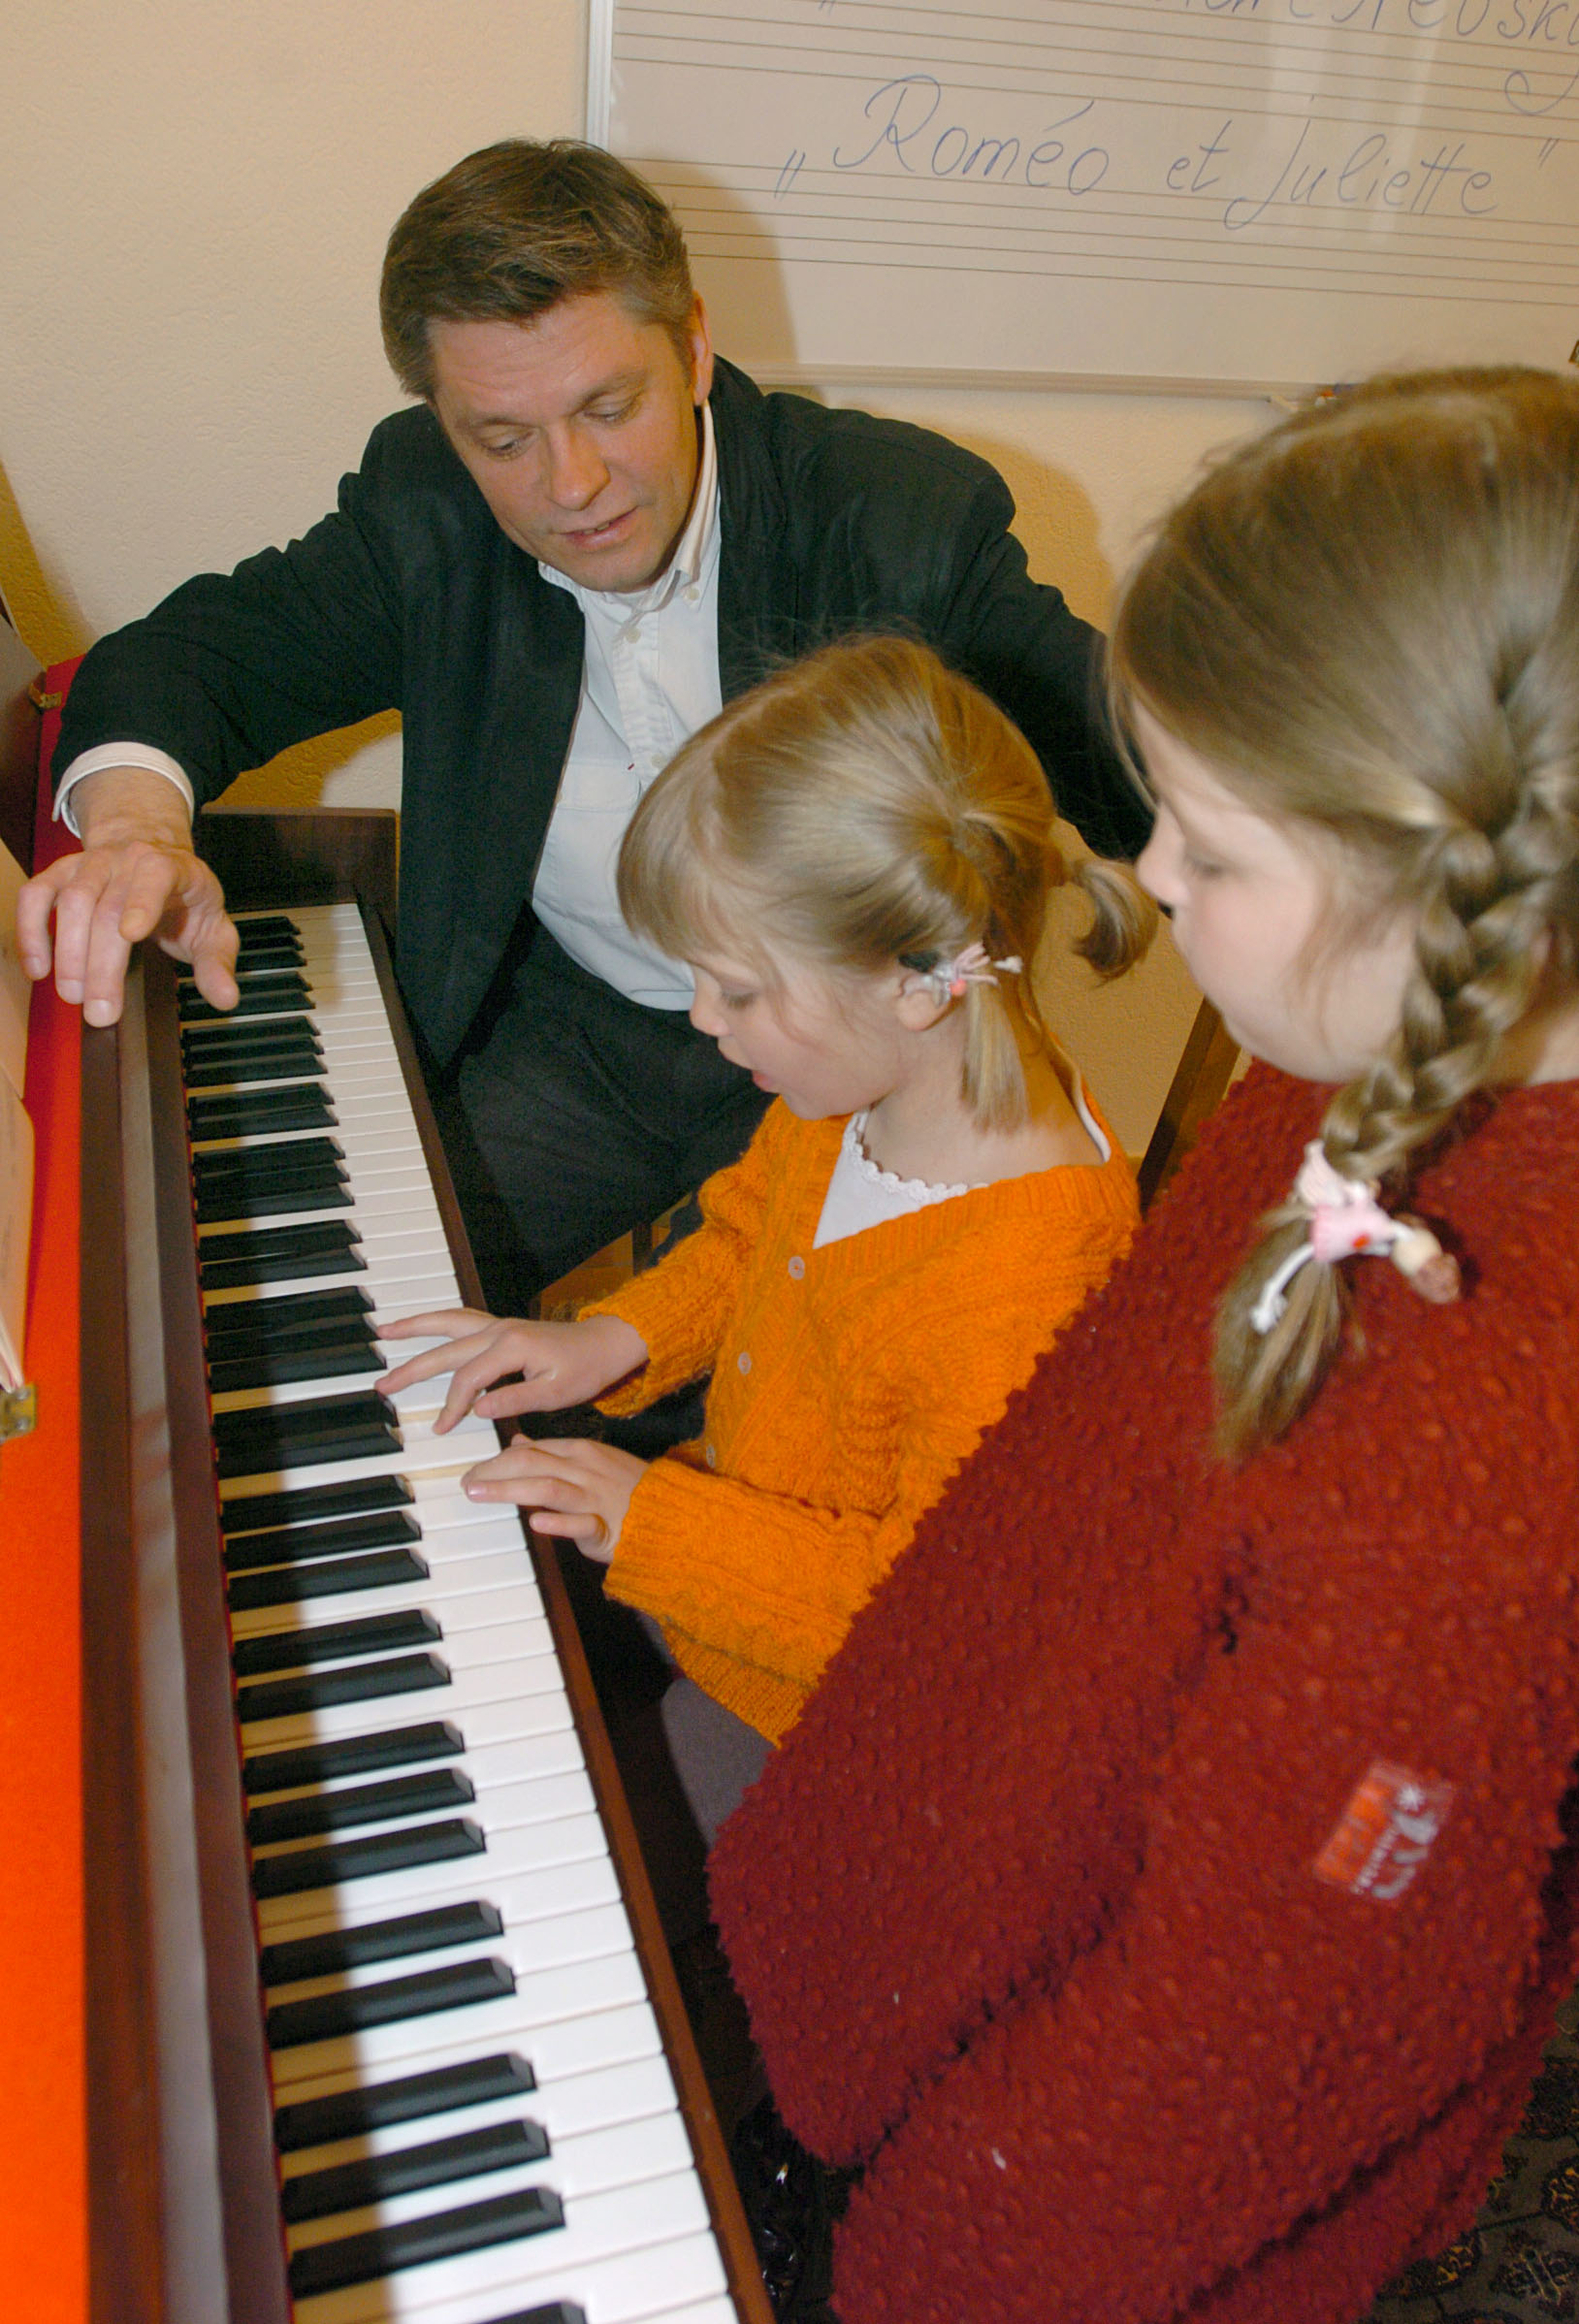 Lausanne .13.04.05. nouvelle école de musique à la rue des Alpes, avec Sergueï Tcherkassov, professeur. sur la photo Emilie et Louise au cours de piano.
©janine jousson